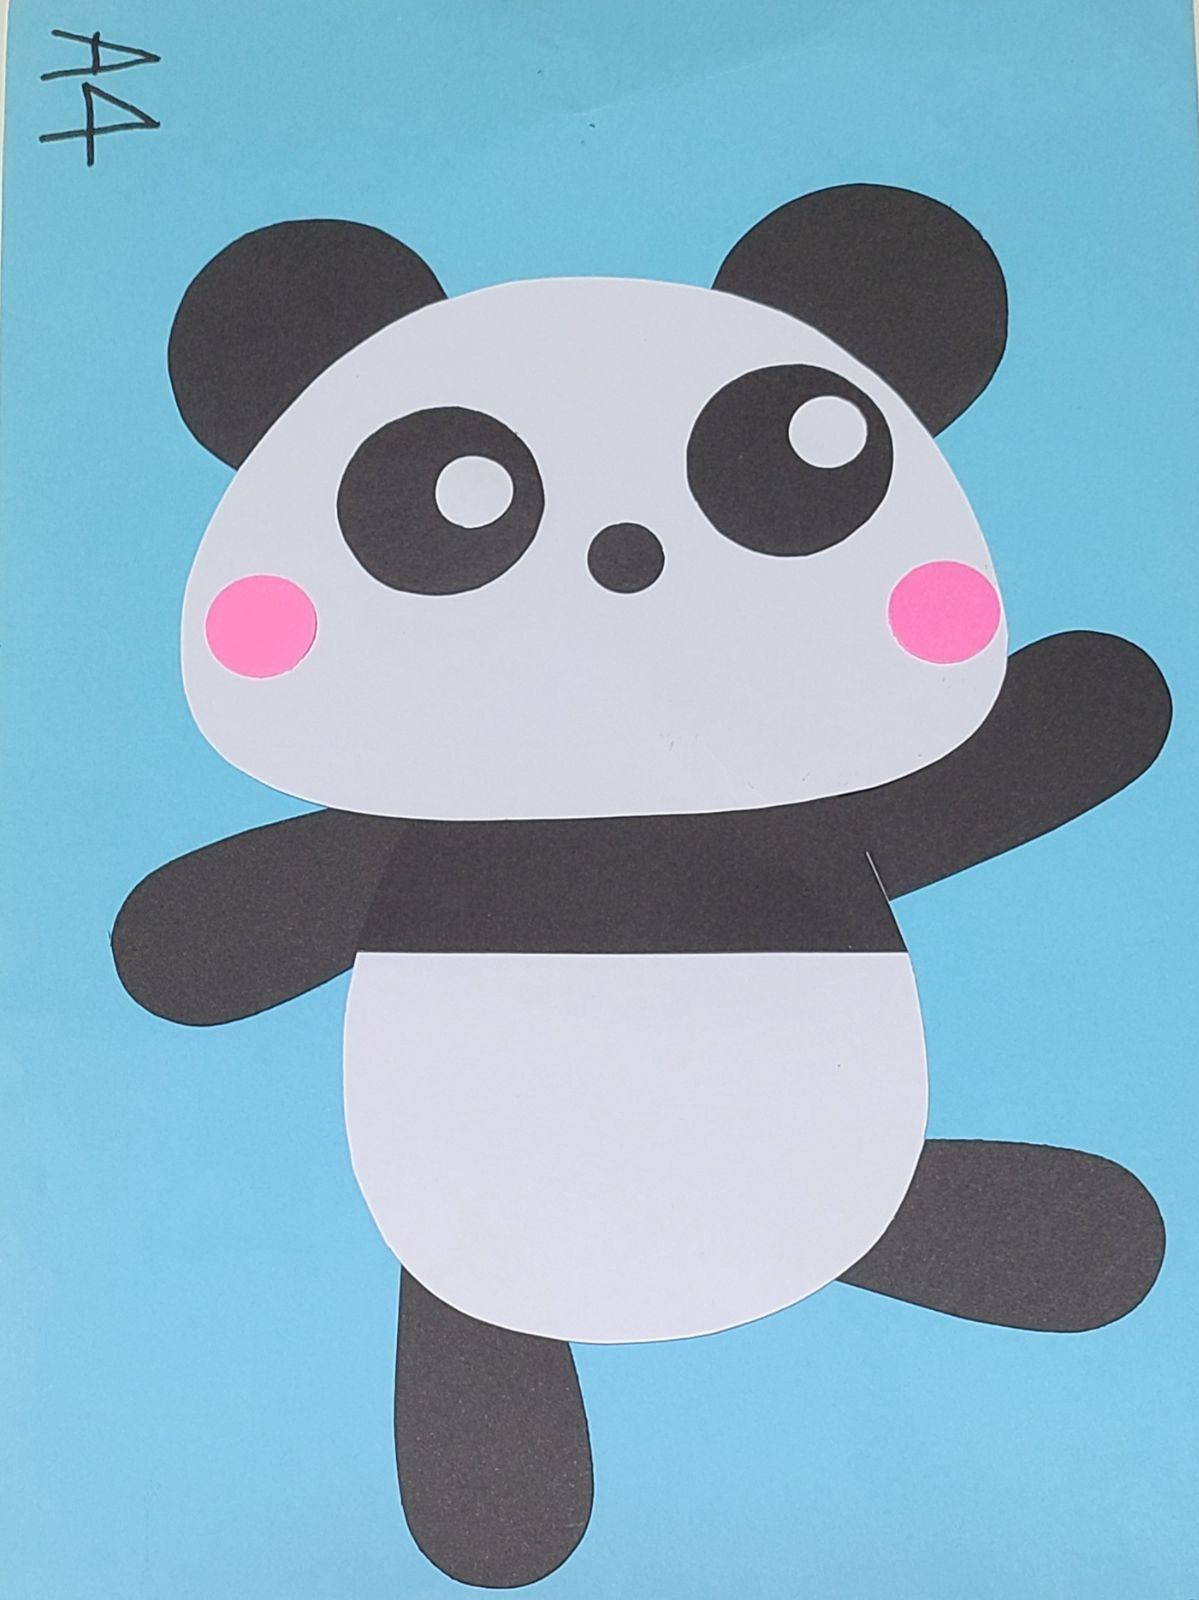 おすすめ】パンダ(全身)製作キット8セット 保育園 幼稚園 子育て